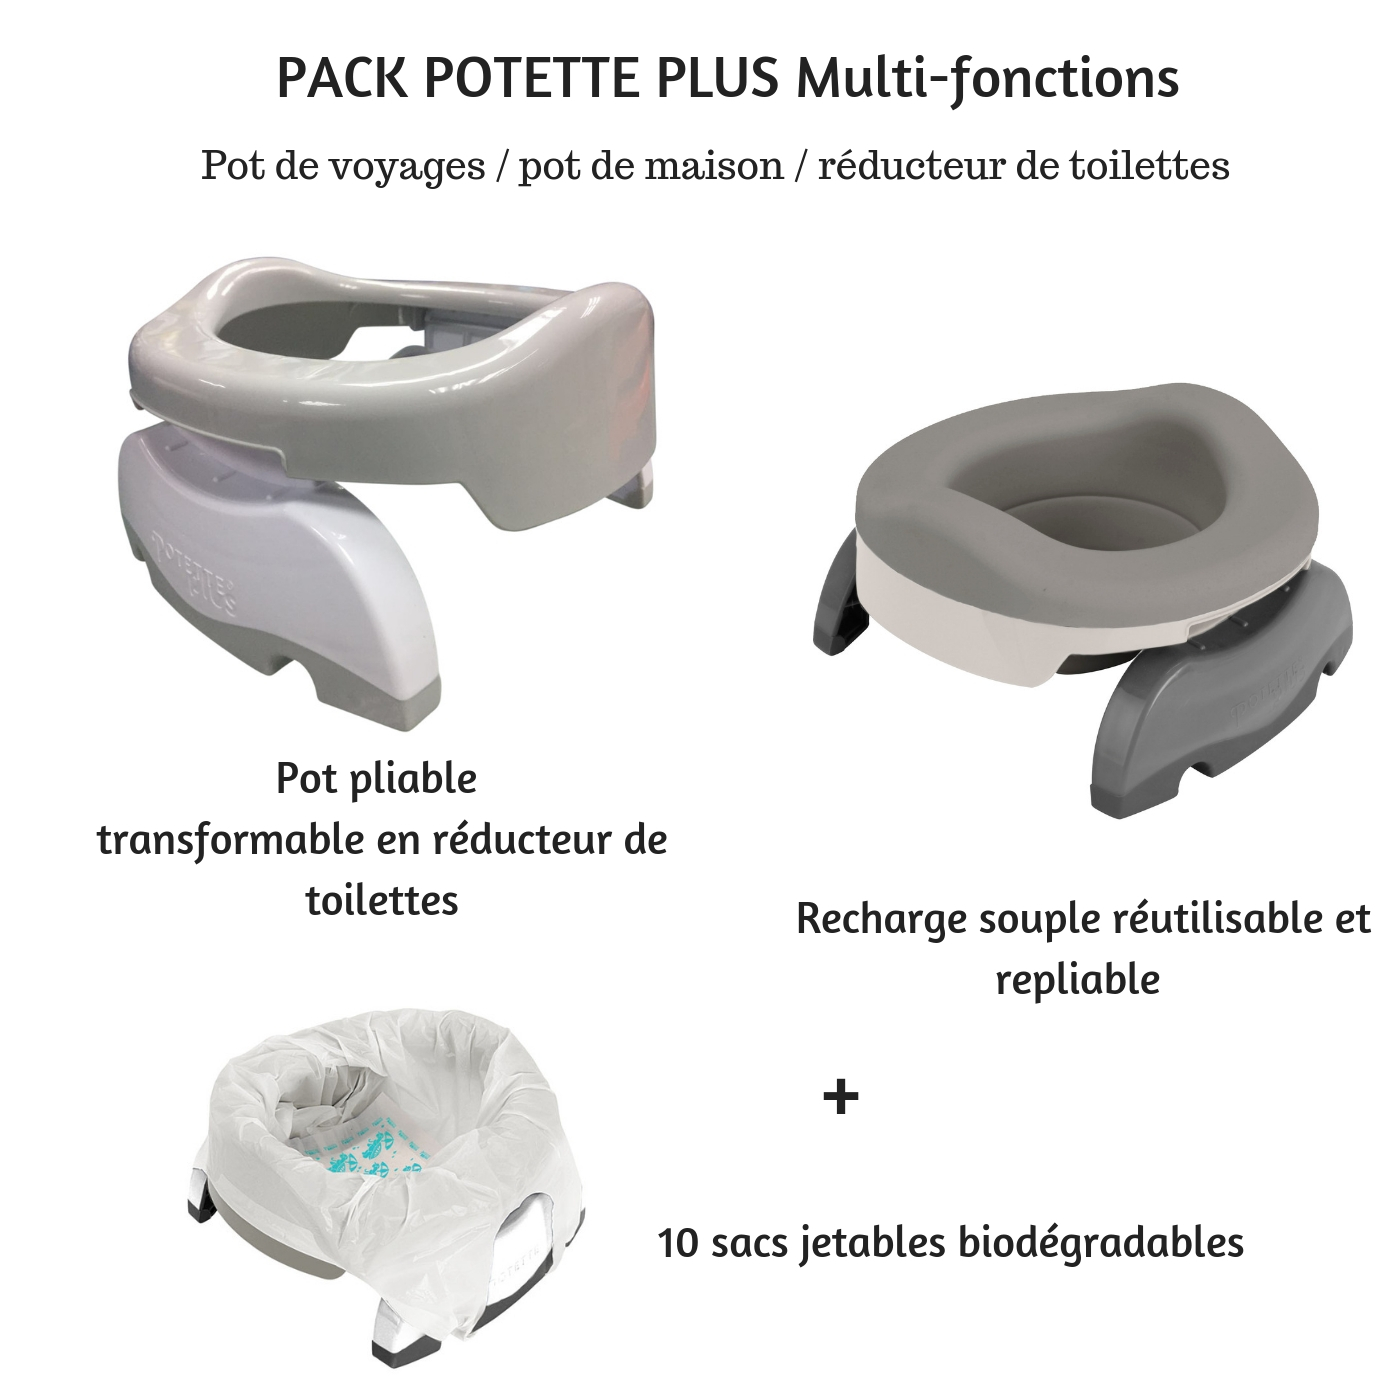 Pot bébé multifonctions 3 en 1 (pot de voyages, réducteur de toilettes, pot  de maison) - 3 coloris